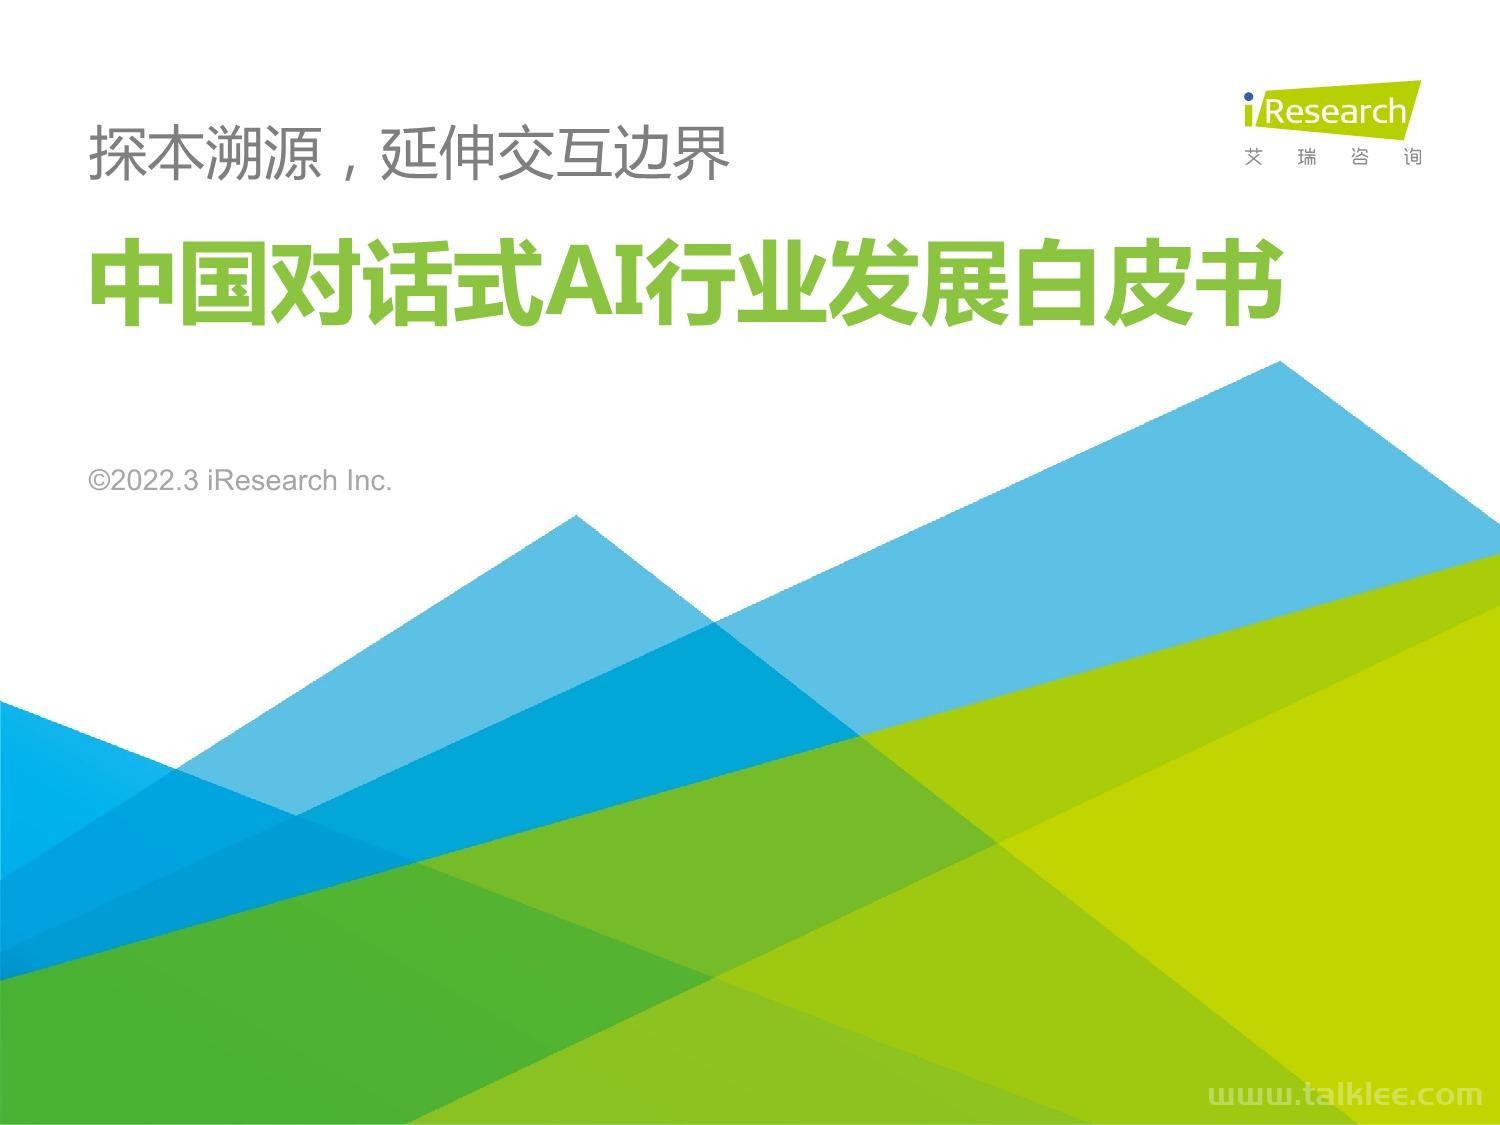 「艾瑞咨询」 2022年中国对话式AI行业发展白皮书